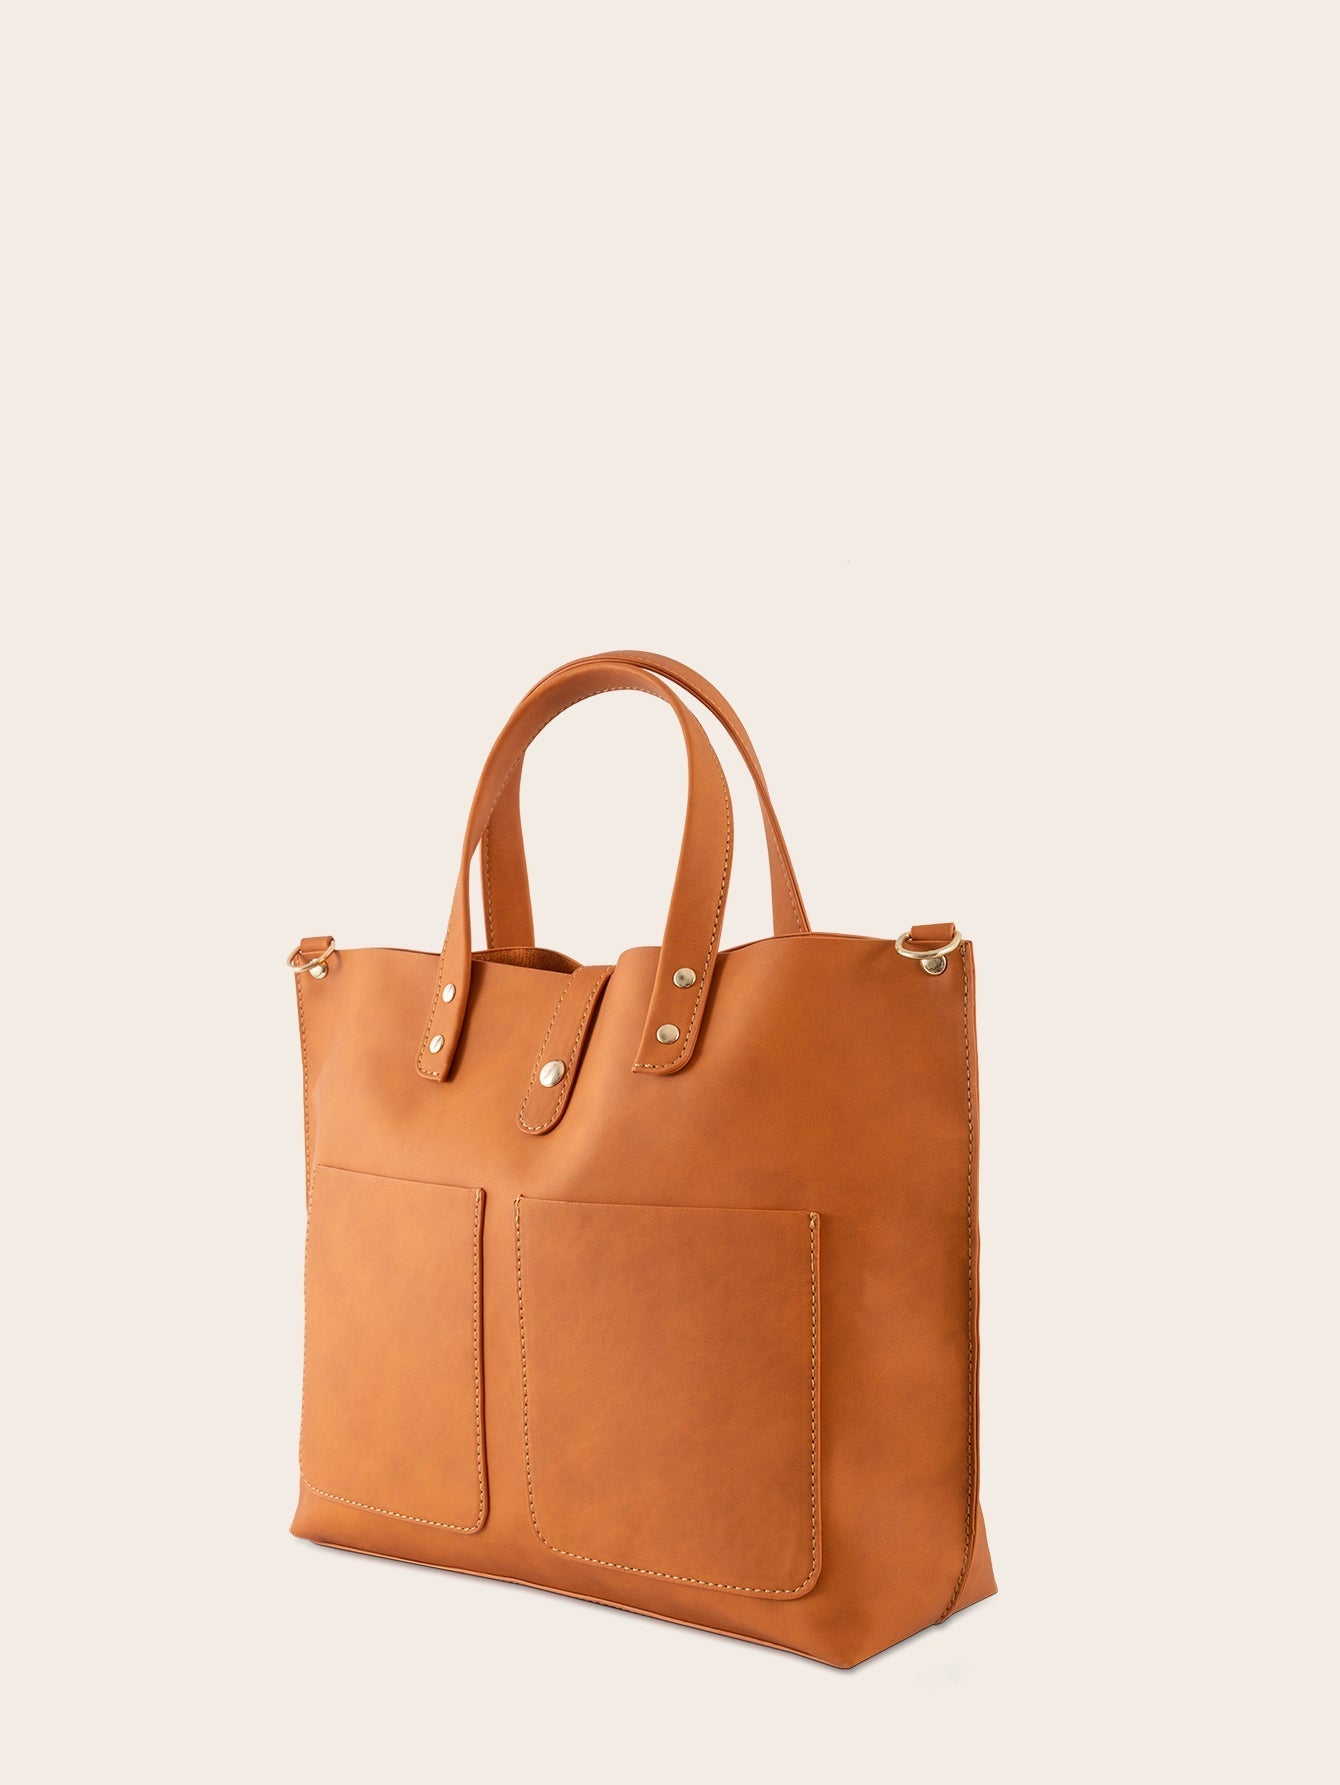 Women Large Capacity Handbags Simple Shoulder Bag Sai Feel